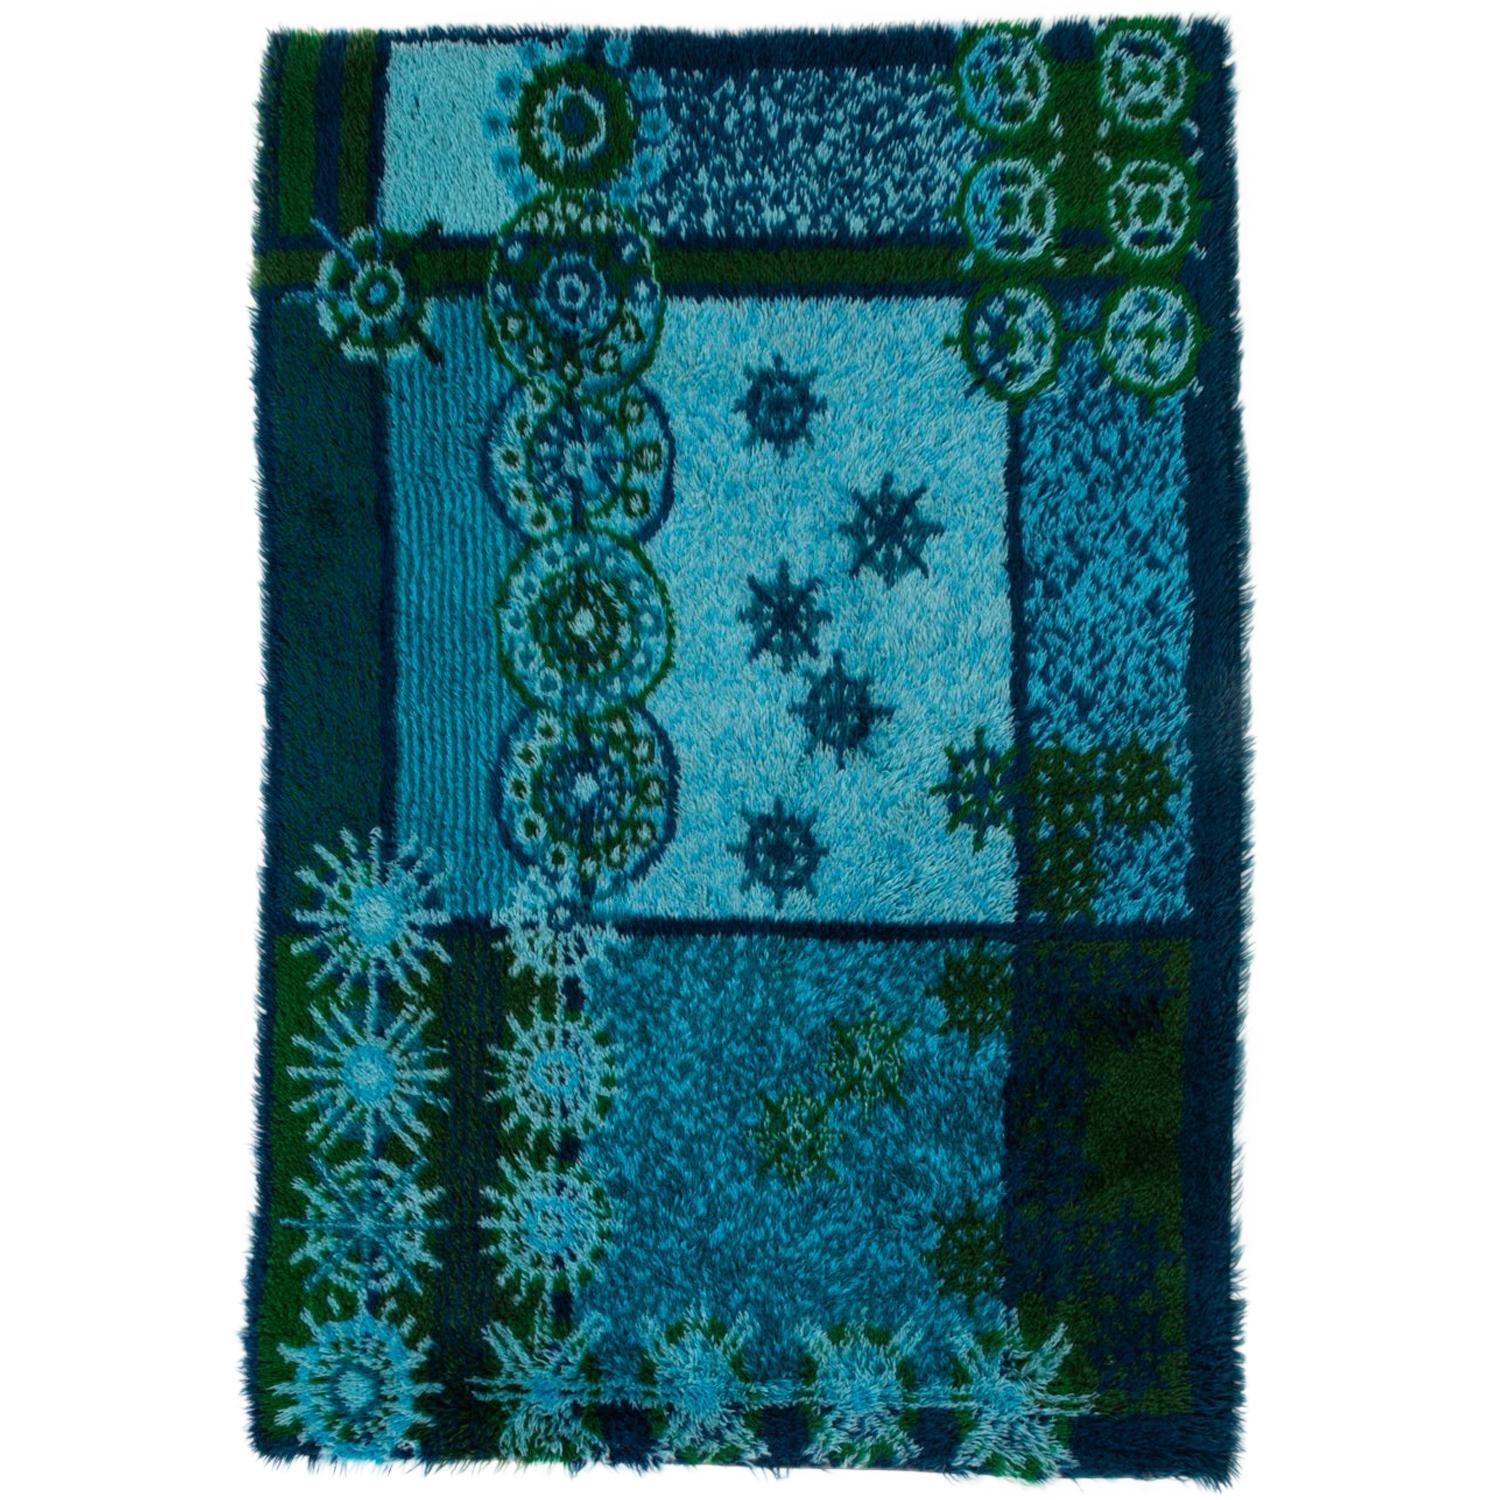 Ege Rya Rug in “Blue Snowflake” Design